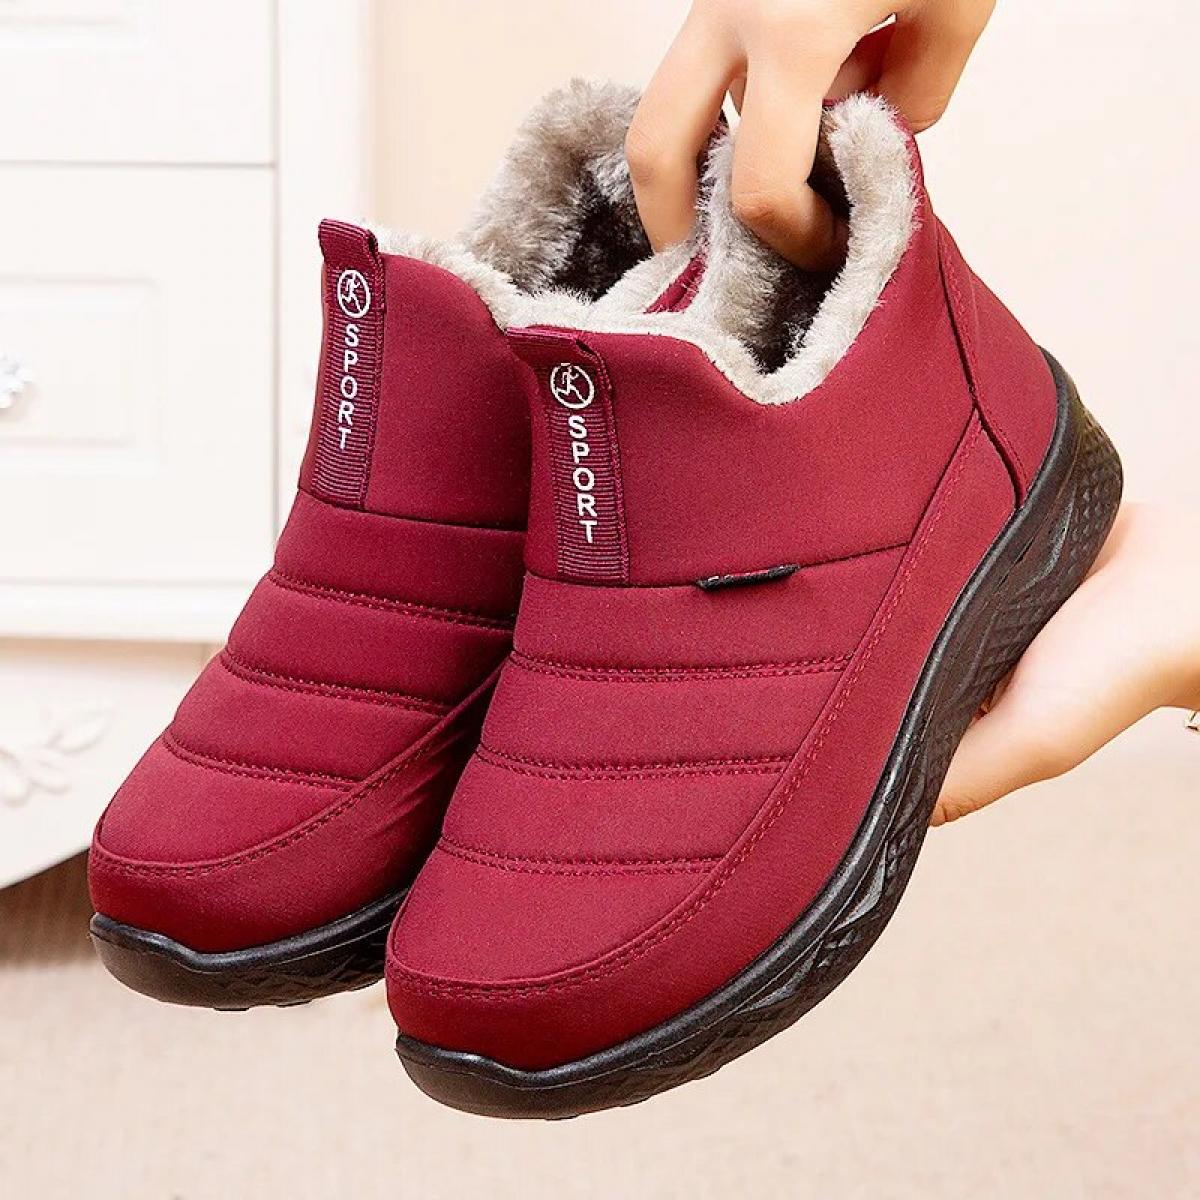 Botas de nieve para mujer, zapatos de invierno, botines impermeables sin cordones, de piel cálida y sólida, calzado cómodo para 